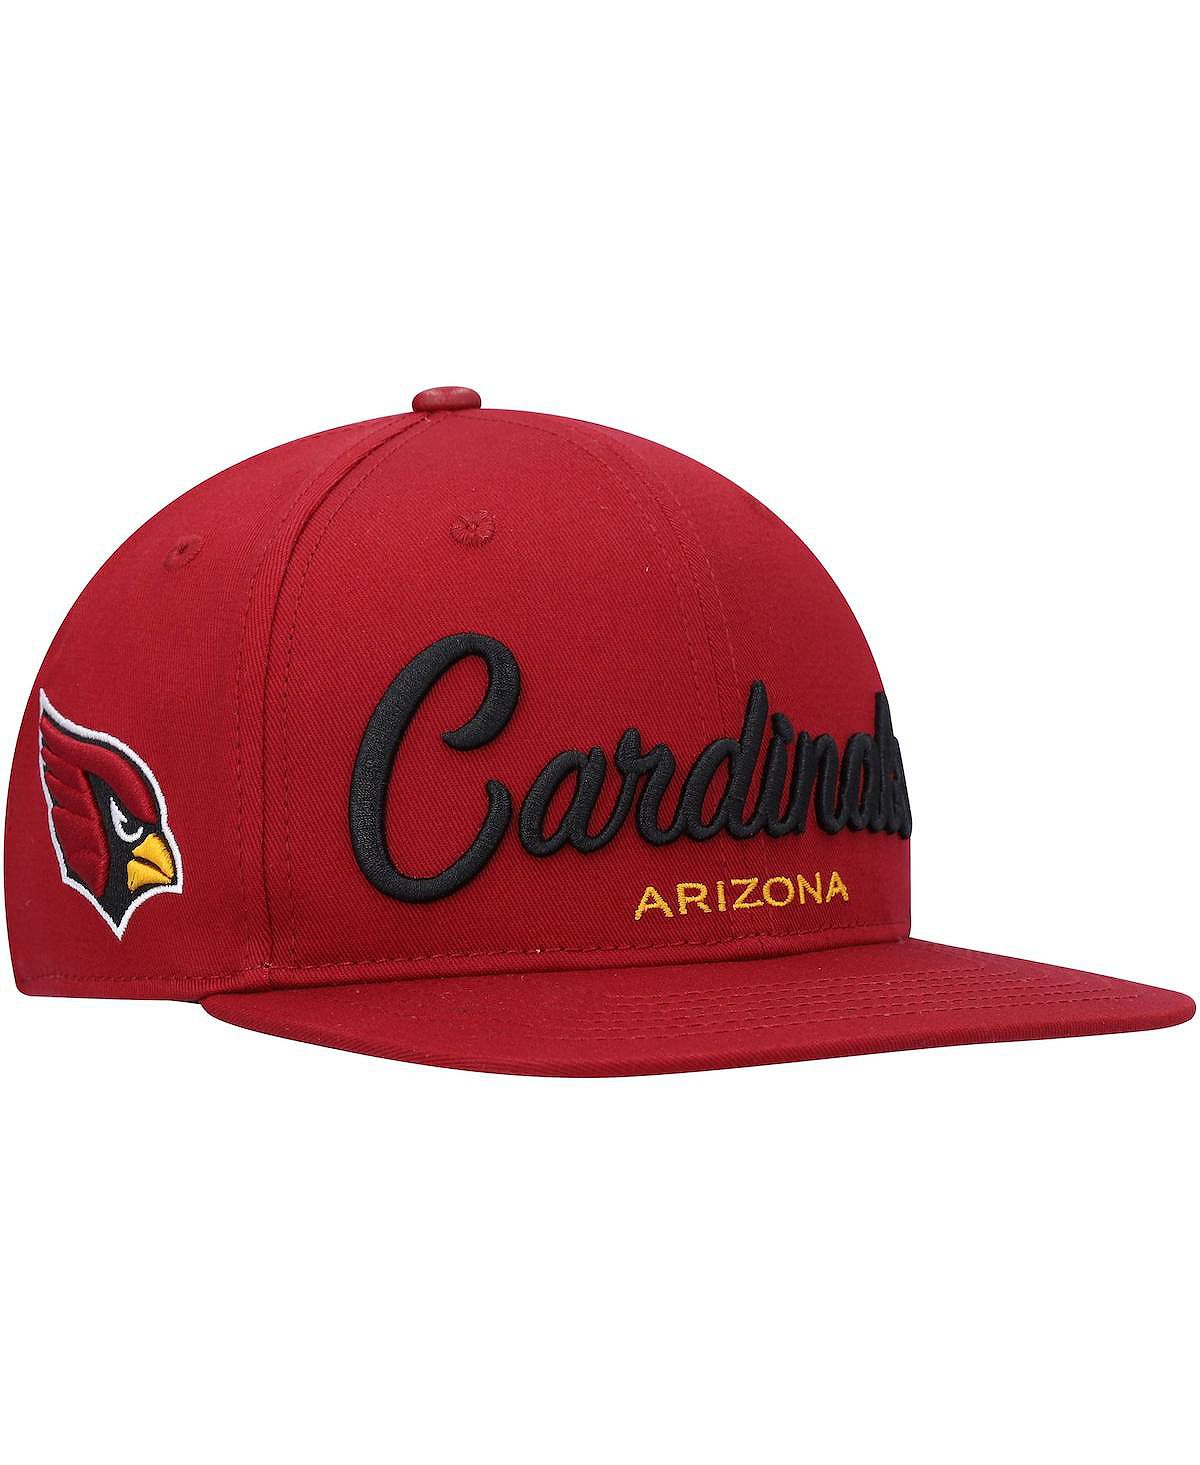 Мужская кепка Snapback Cardinal Arizona Cardinals с надписью и надписью Pro Standard мужская двухцветная кепка с застежкой cardinal arizona cardinals черная pro standard